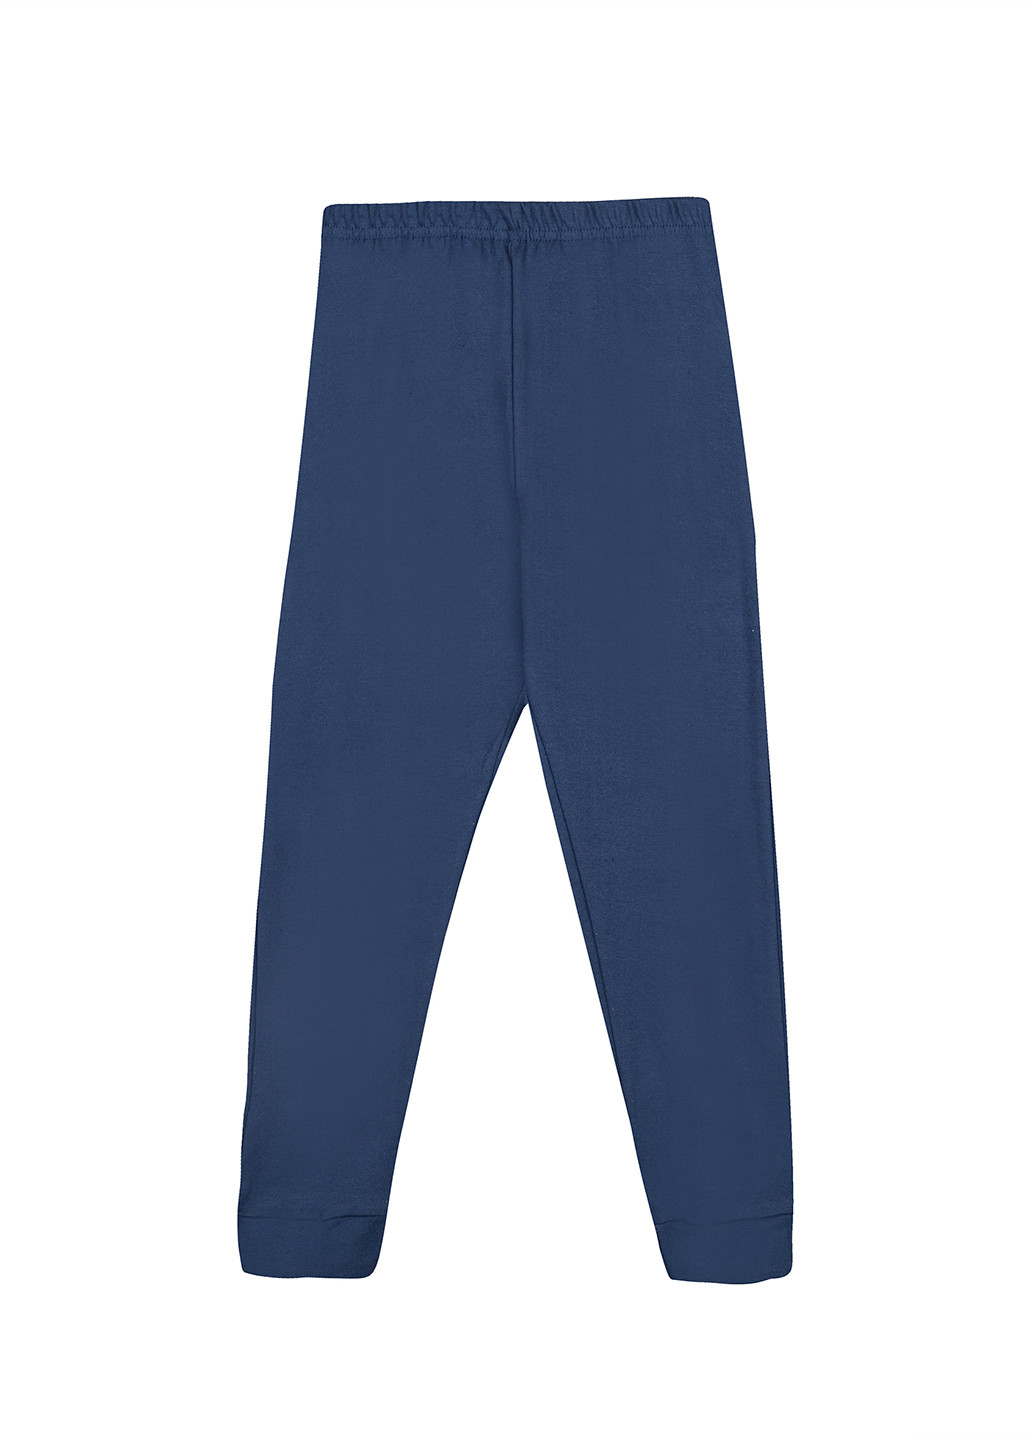 Комбинированная всесезон пижама (свитшот, брюки) свитшот + брюки Nazarenogabrielli